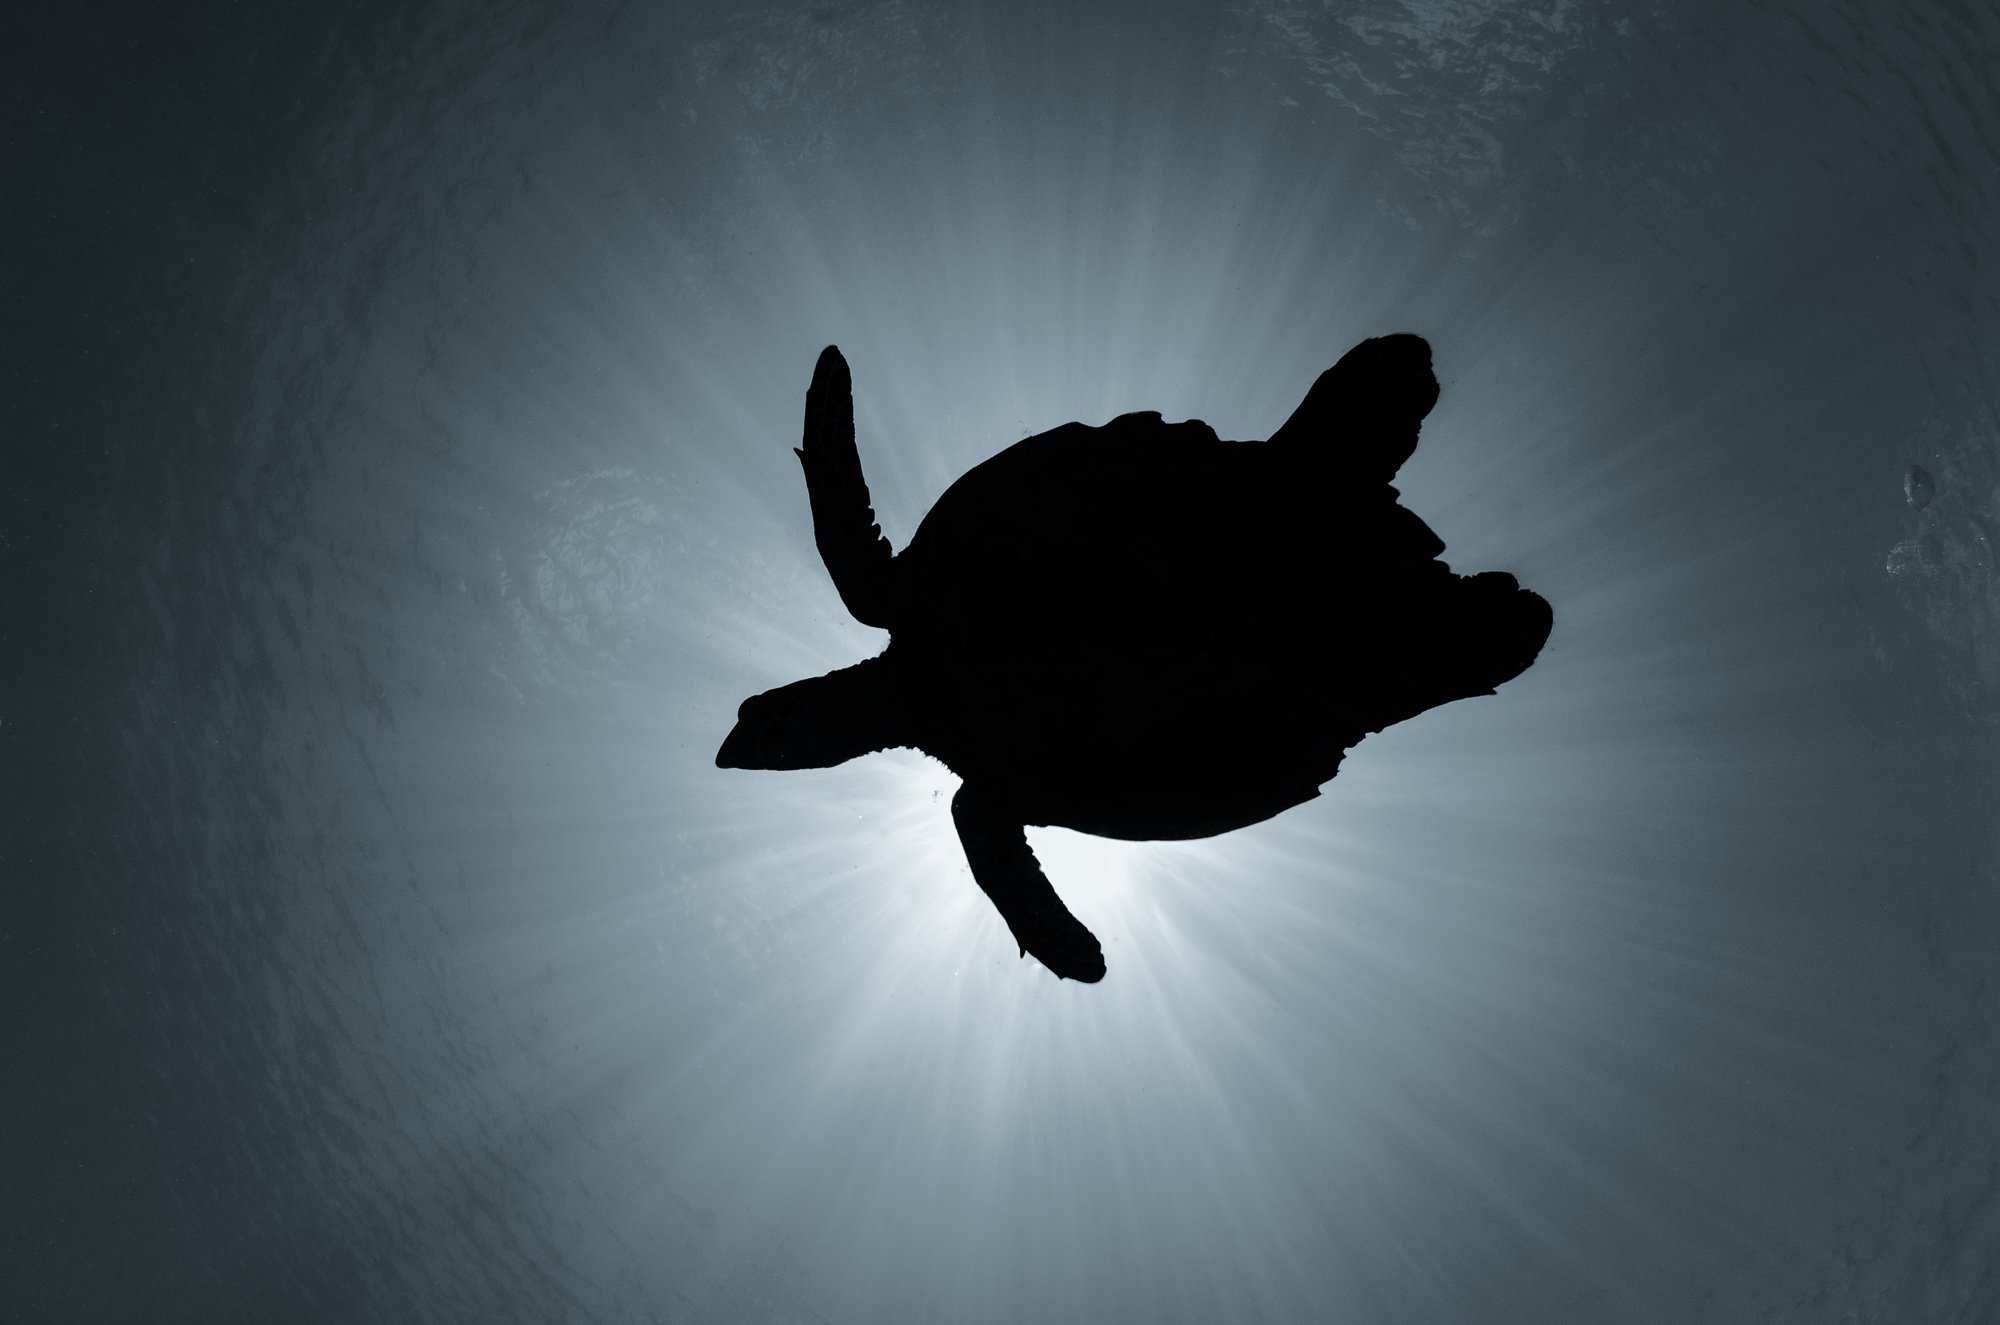 черепаха, природа, животные, подводой, дикая природа, солнечные лучи, подводный мир, Дмитрий Старостенков